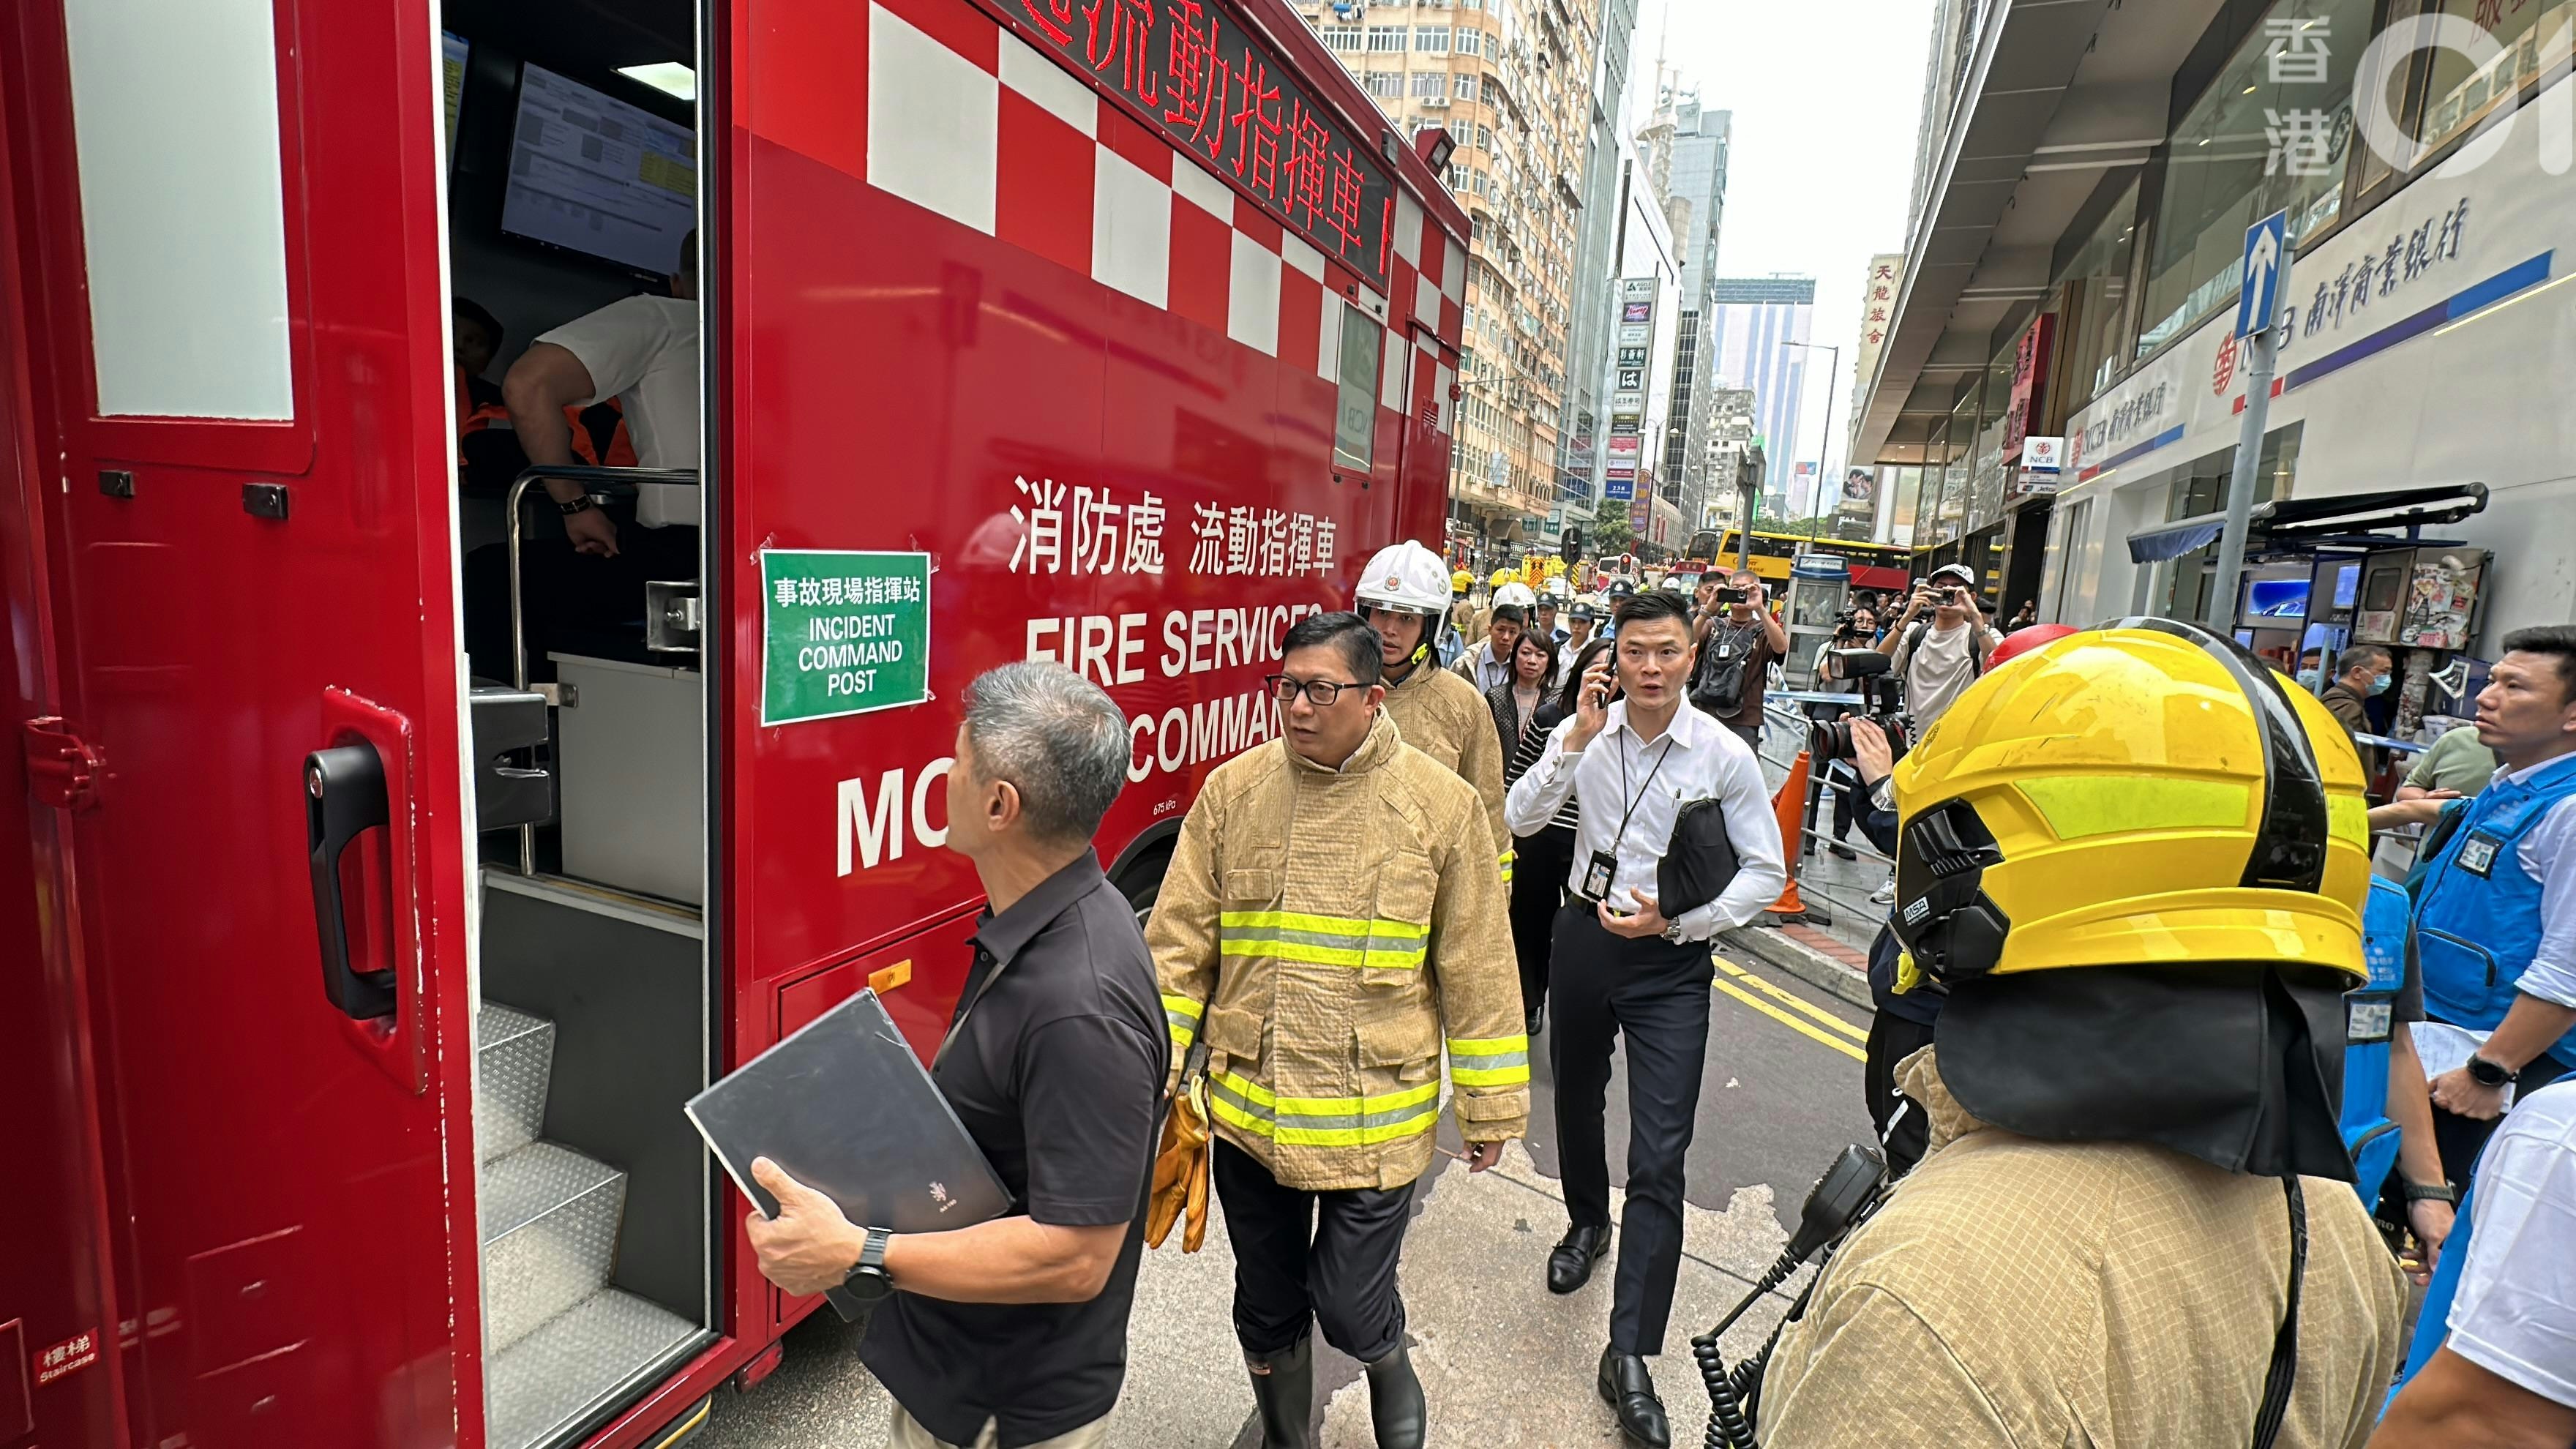 保安局局长邓炳强到现场视察，并登上消防处流动指挥车了解详情，其后换上消防制服佩戴消防帽进入火场。（马耀文摄）